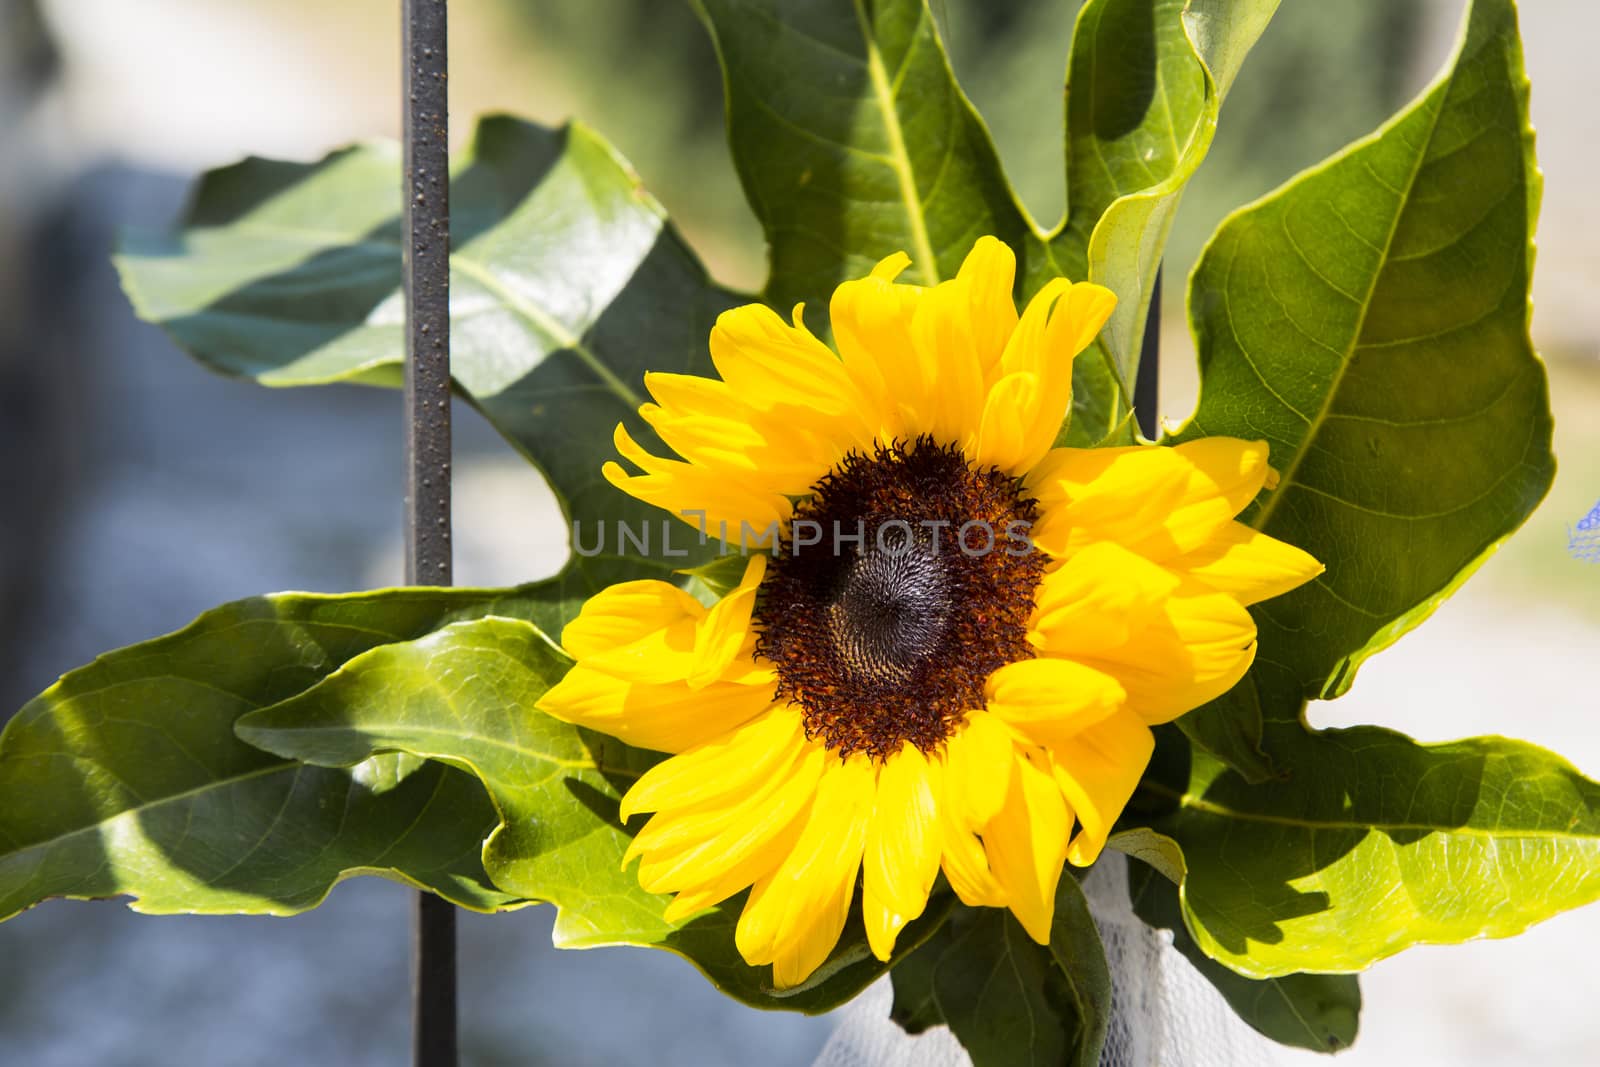 Sunflower by nicobernieri